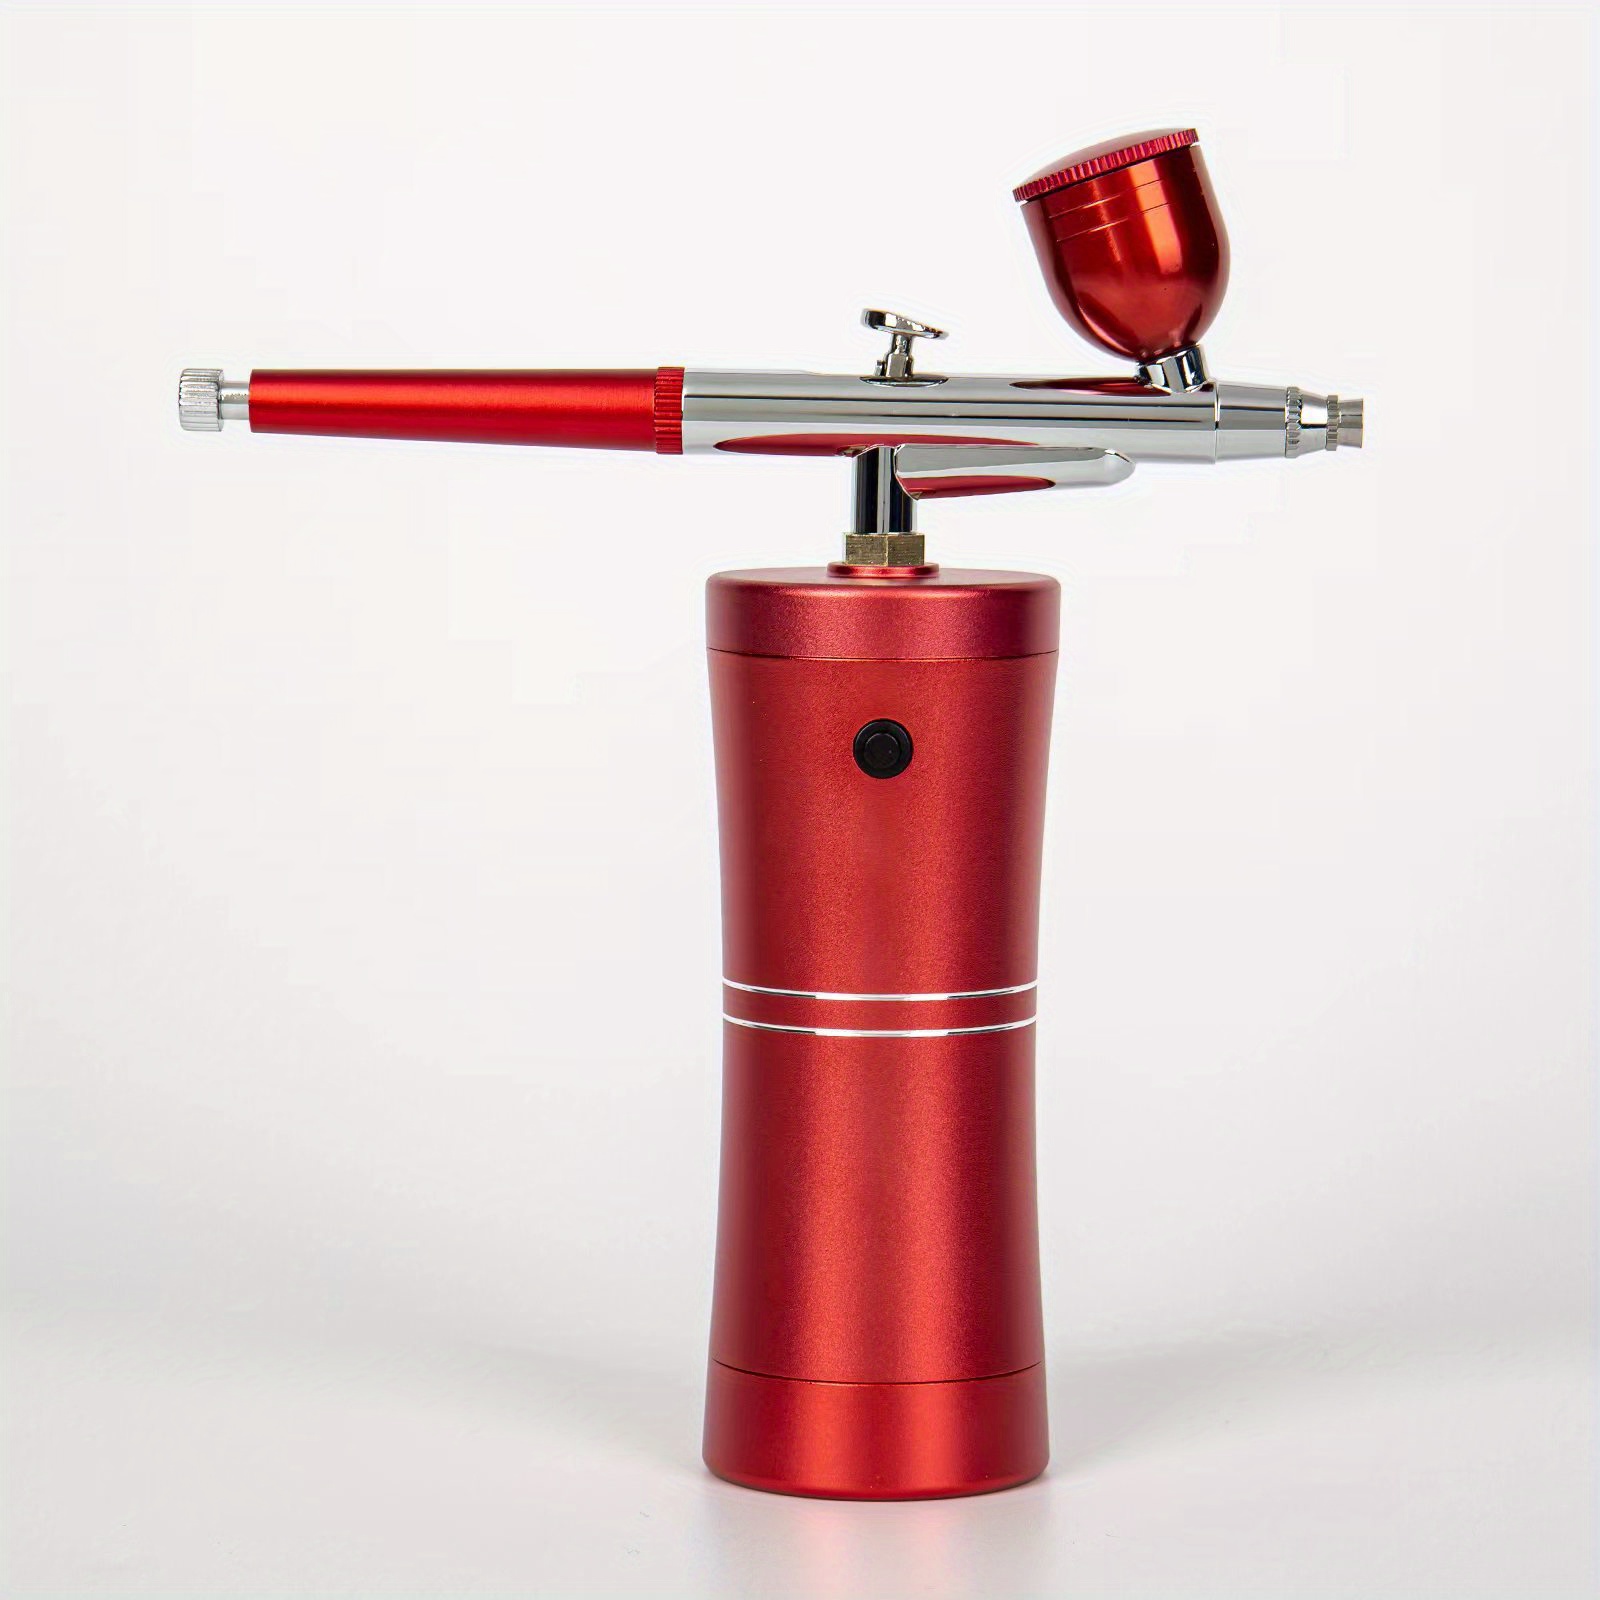 PORTABLE AIRBRUSH KIT Kit with Airbrush Guns Red - TDI, Inc